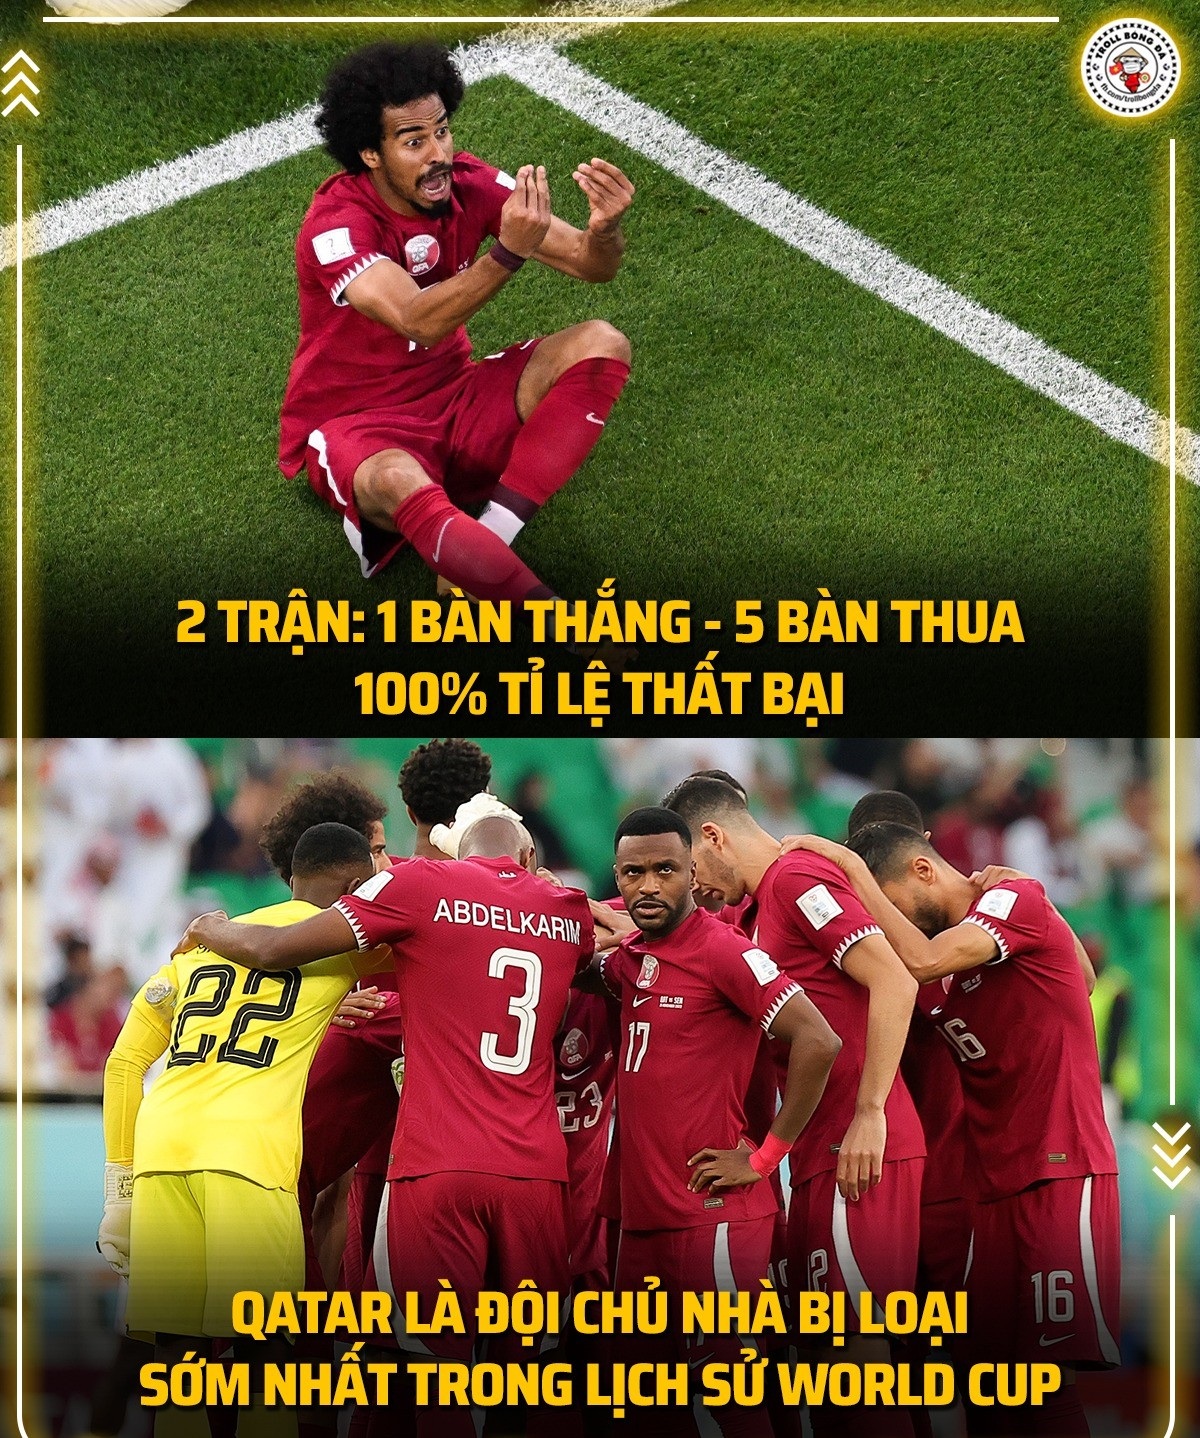 Đội chủ nhà Qatar đã lập nên một kỷ lục buồn (Ảnh: Troll bóng đá).